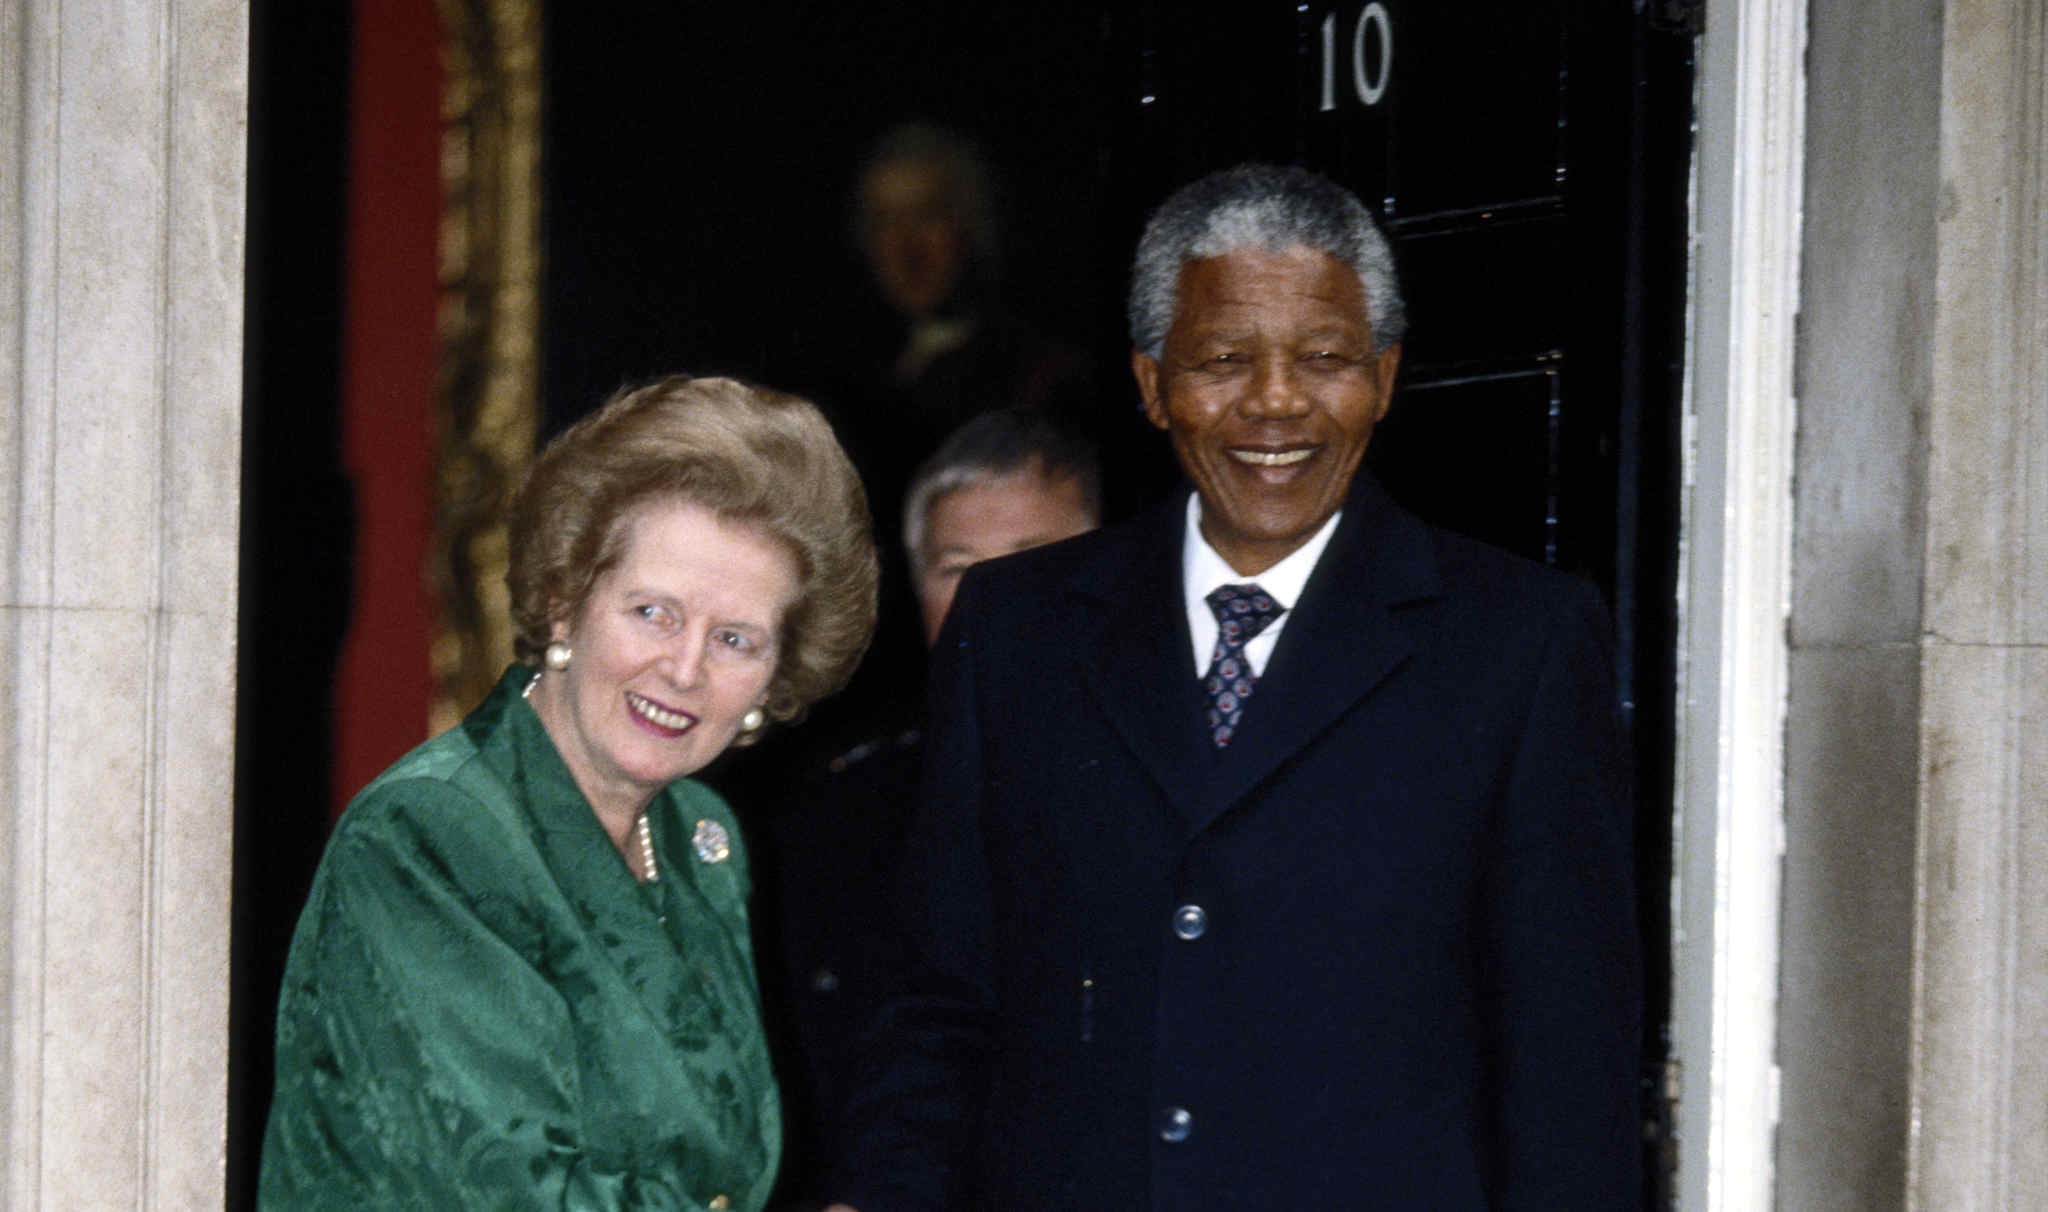 Business over apartheid: When Thatcher met Mandela